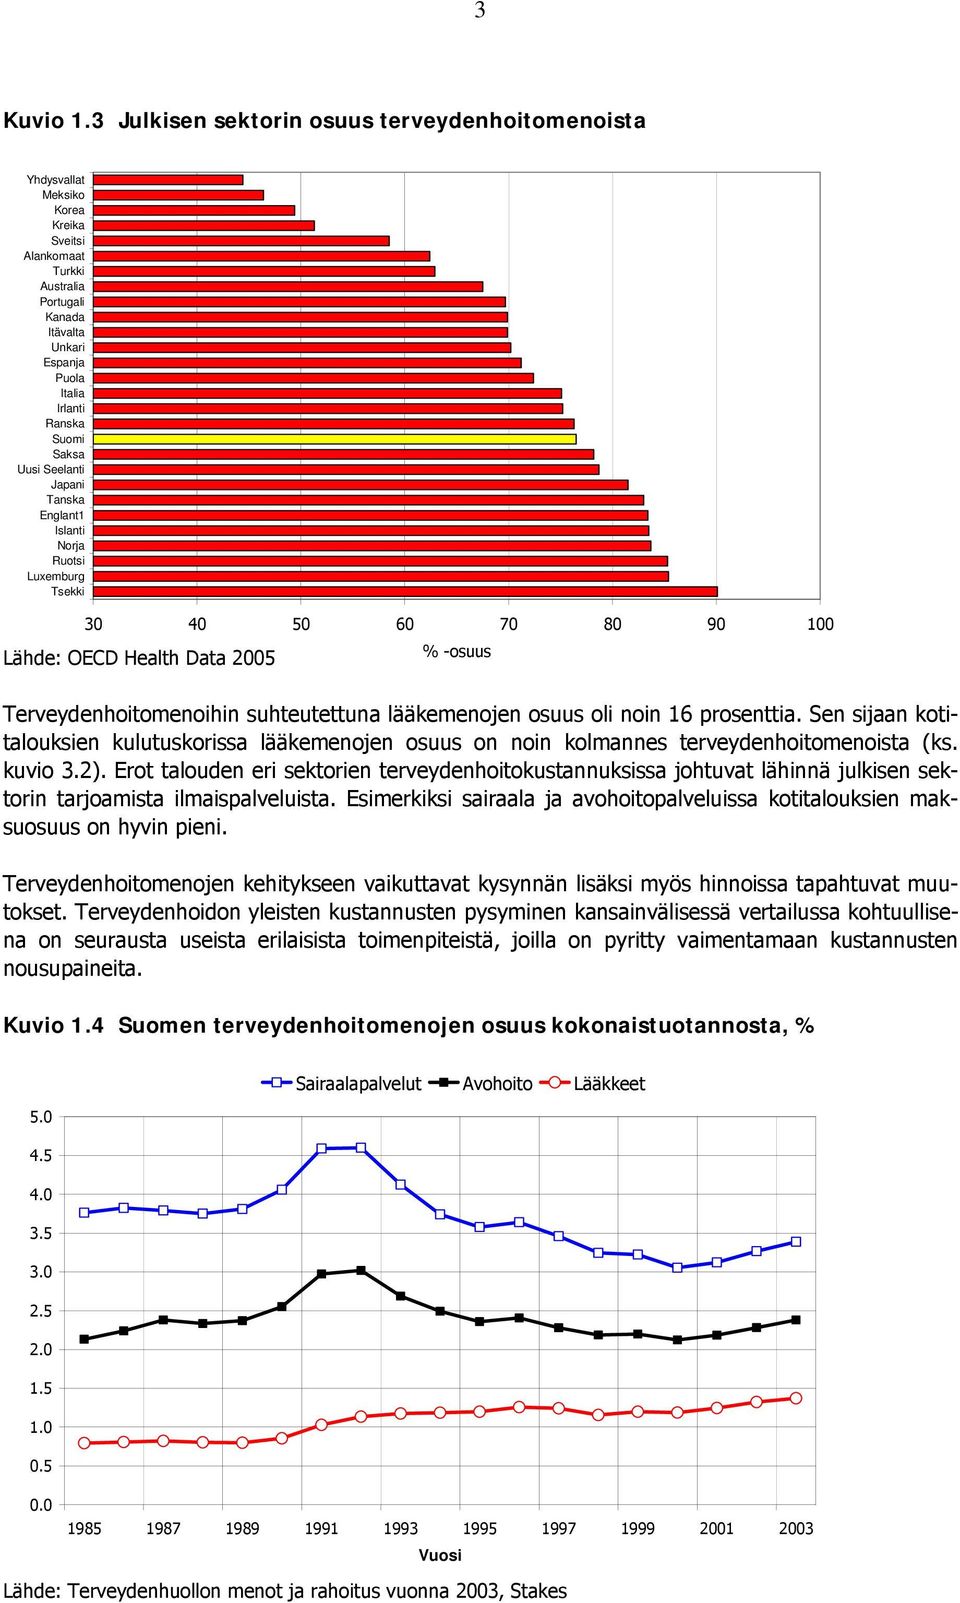 Uusi Seelanti Japani Tanska Englant1 Islanti Norja Ruotsi Luxemburg Tsekki 30 40 50 60 70 80 90 100 Lähde: OECD Health Data 2005 % -osuus Terveydenhoitomenoihin suhteutettuna lääkemenojen osuus oli